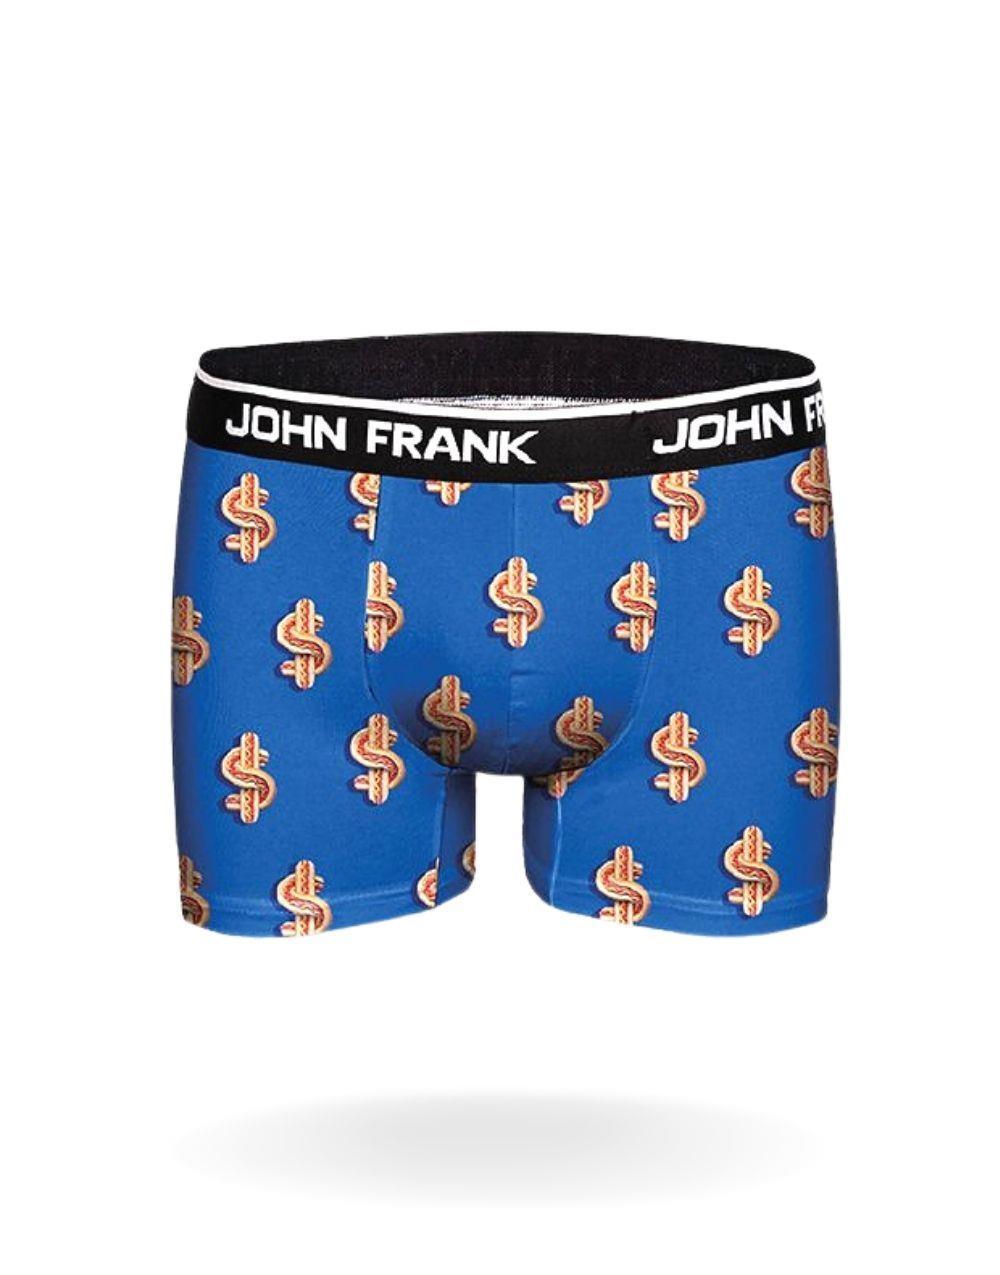 John Frank Digital Men's Boxer - Dollar - STREET MODE ™